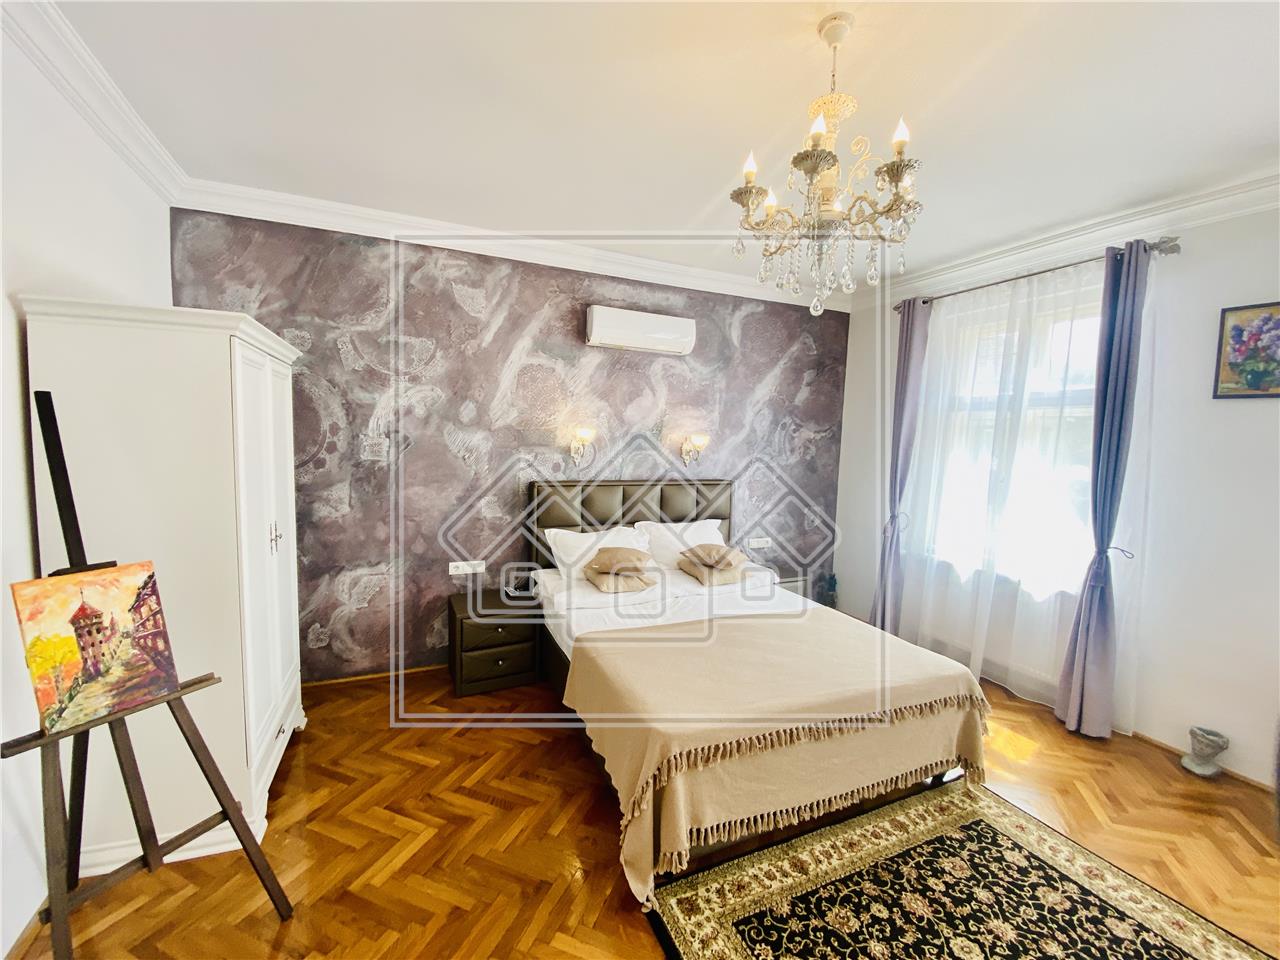 Apartament de vanzare in Sibiu - 118 mp utili - Pretabil investitii